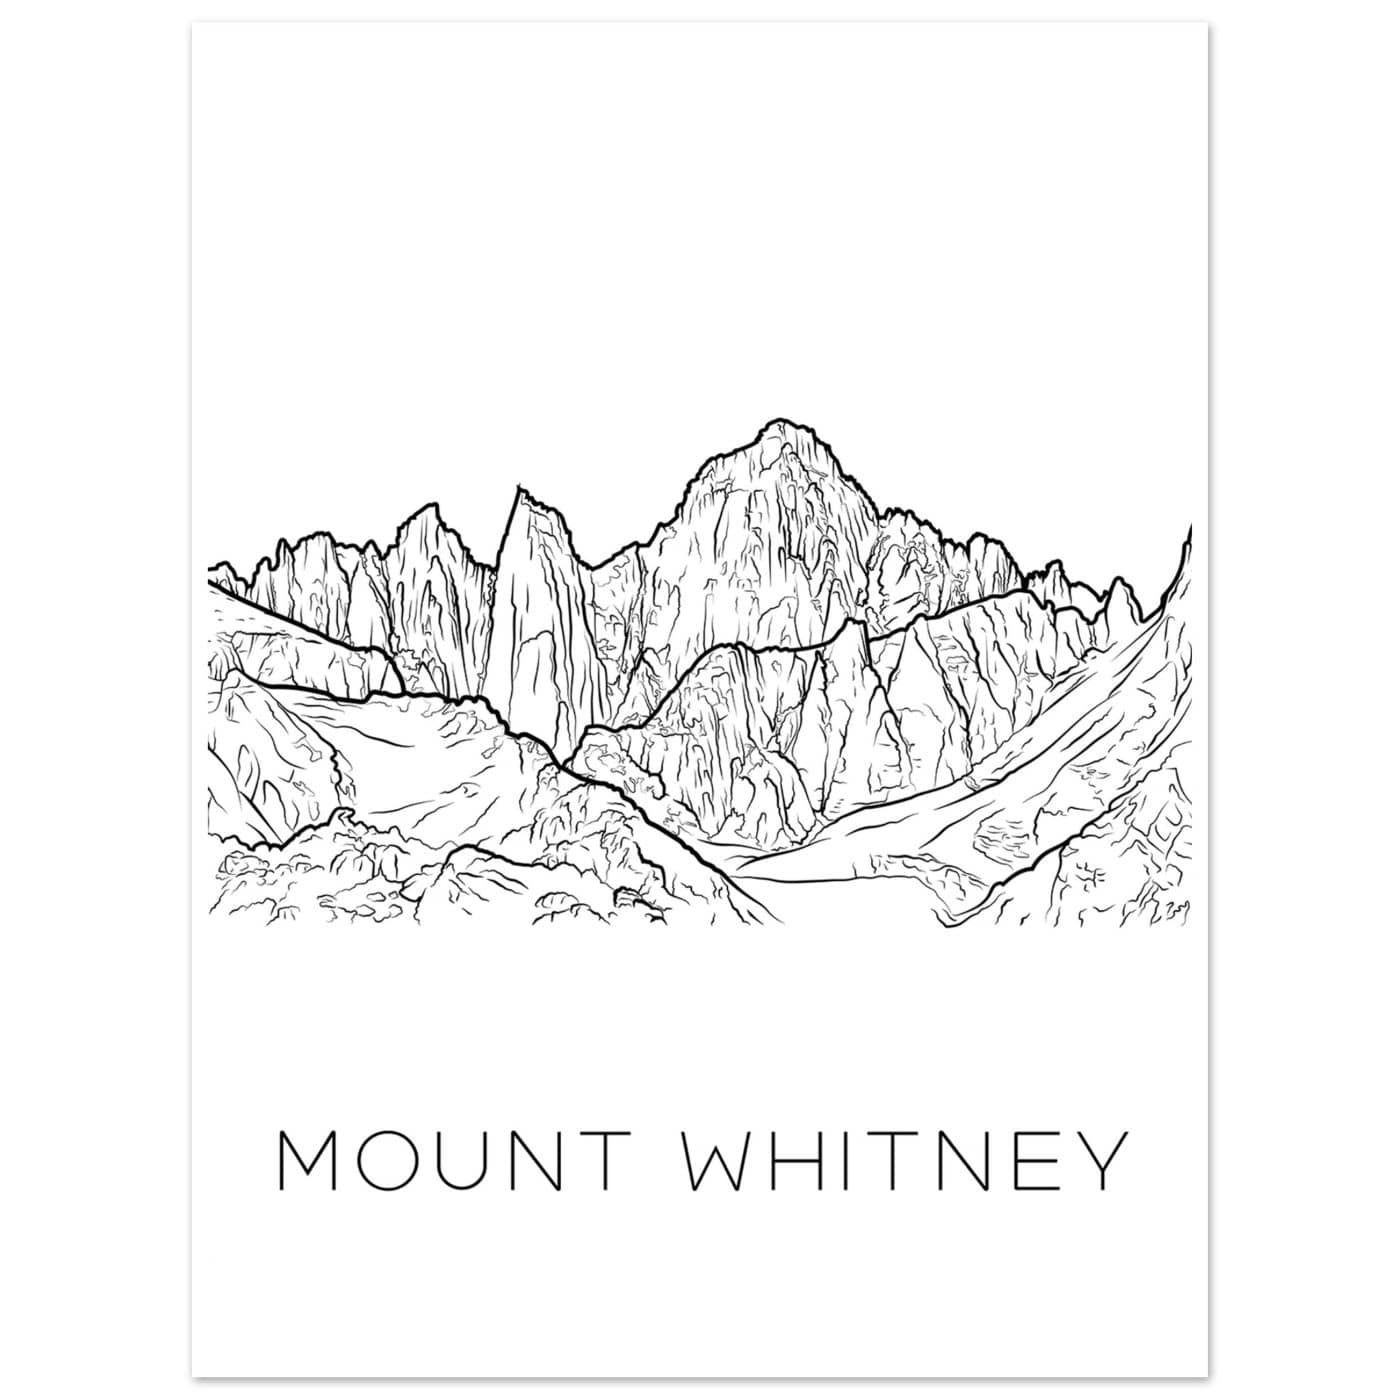 Mount Whitney - Black & White